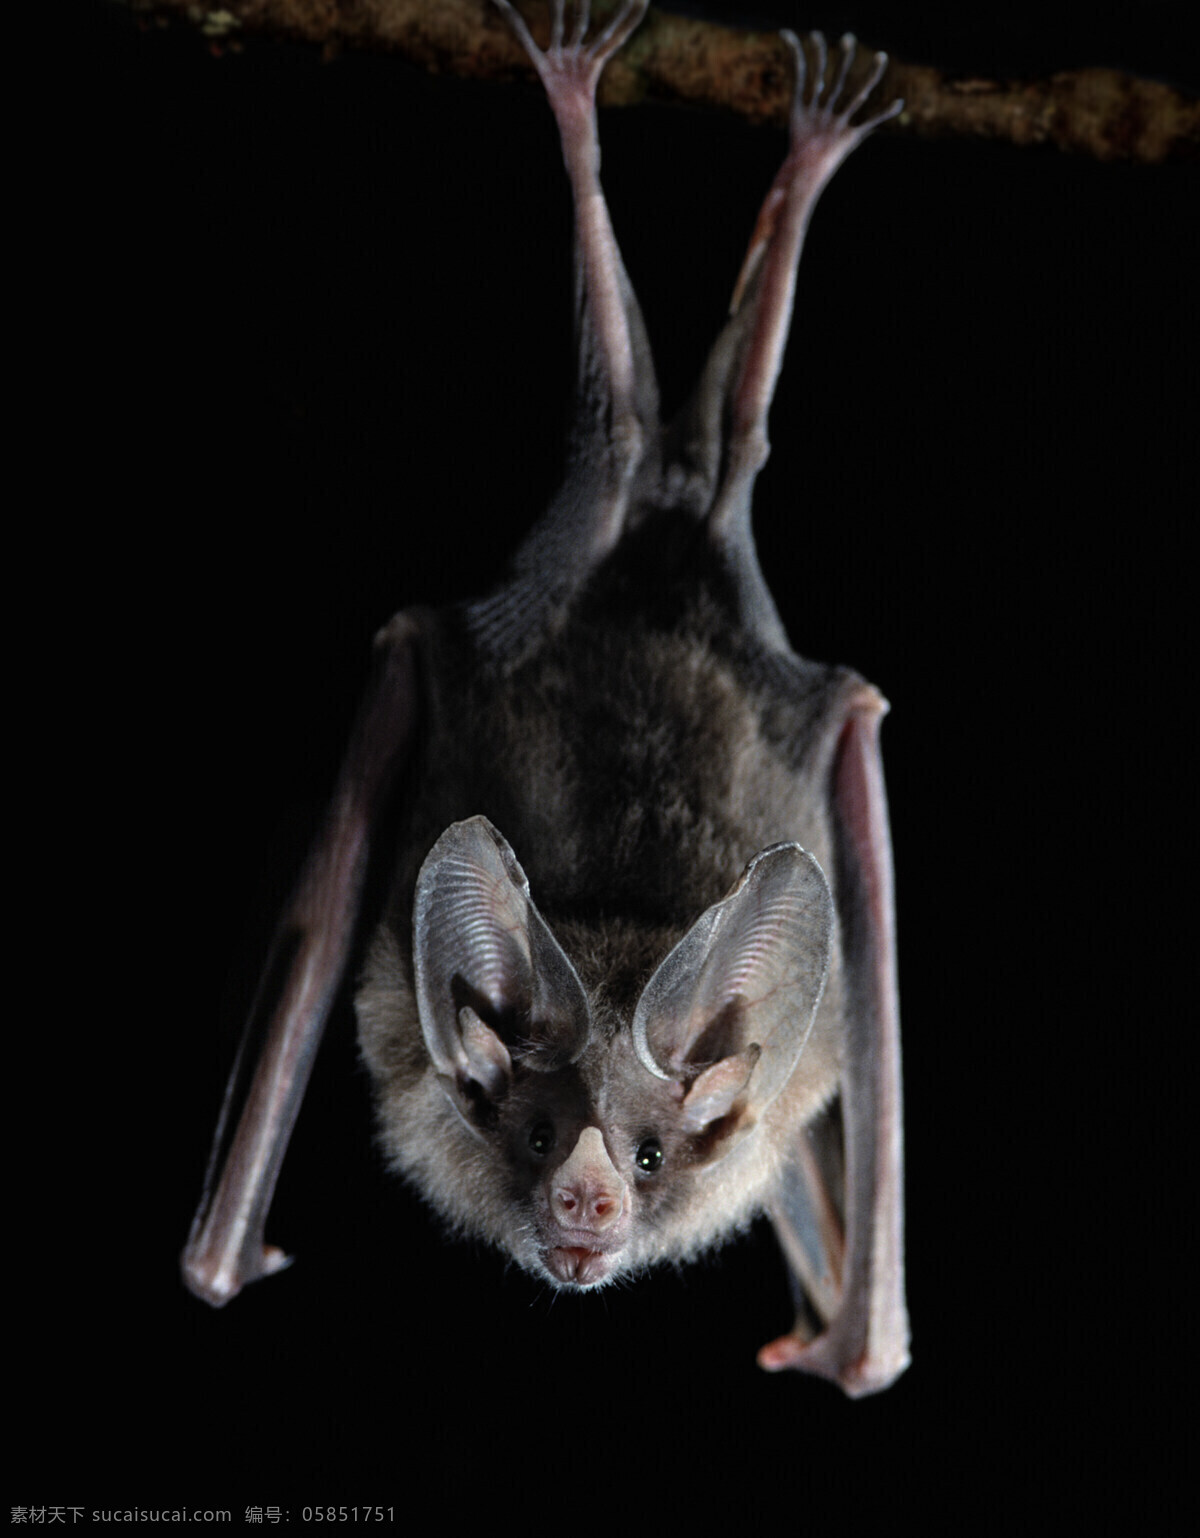 蝙蝠 倒挂 黑夜 吸血 恐怖 山洞 高清 特写 野生动物 生物世界